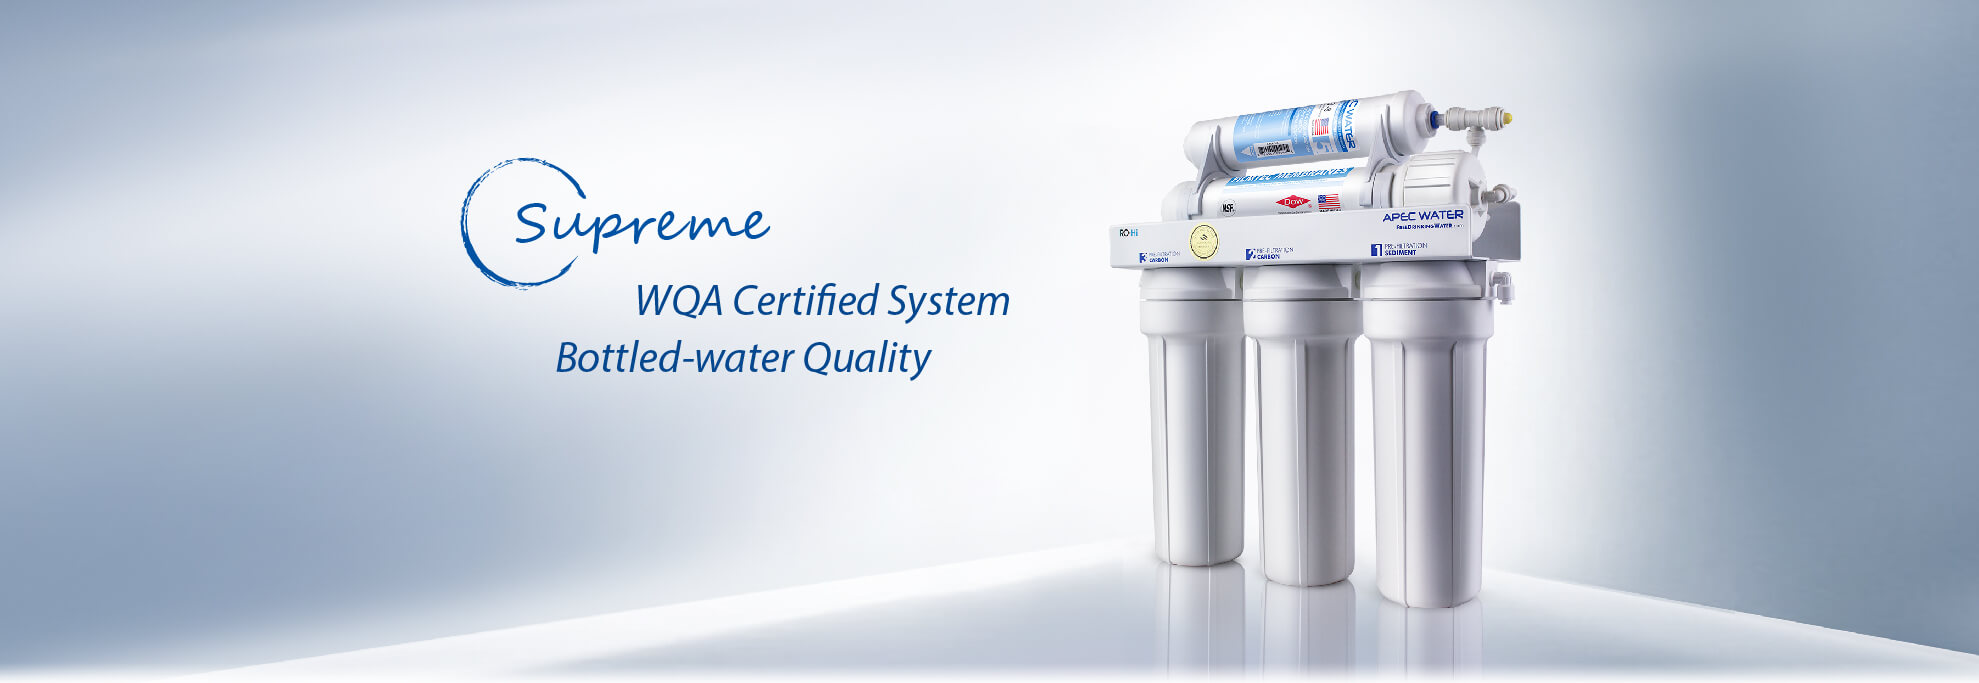 WQA瓶装水质量认证体系